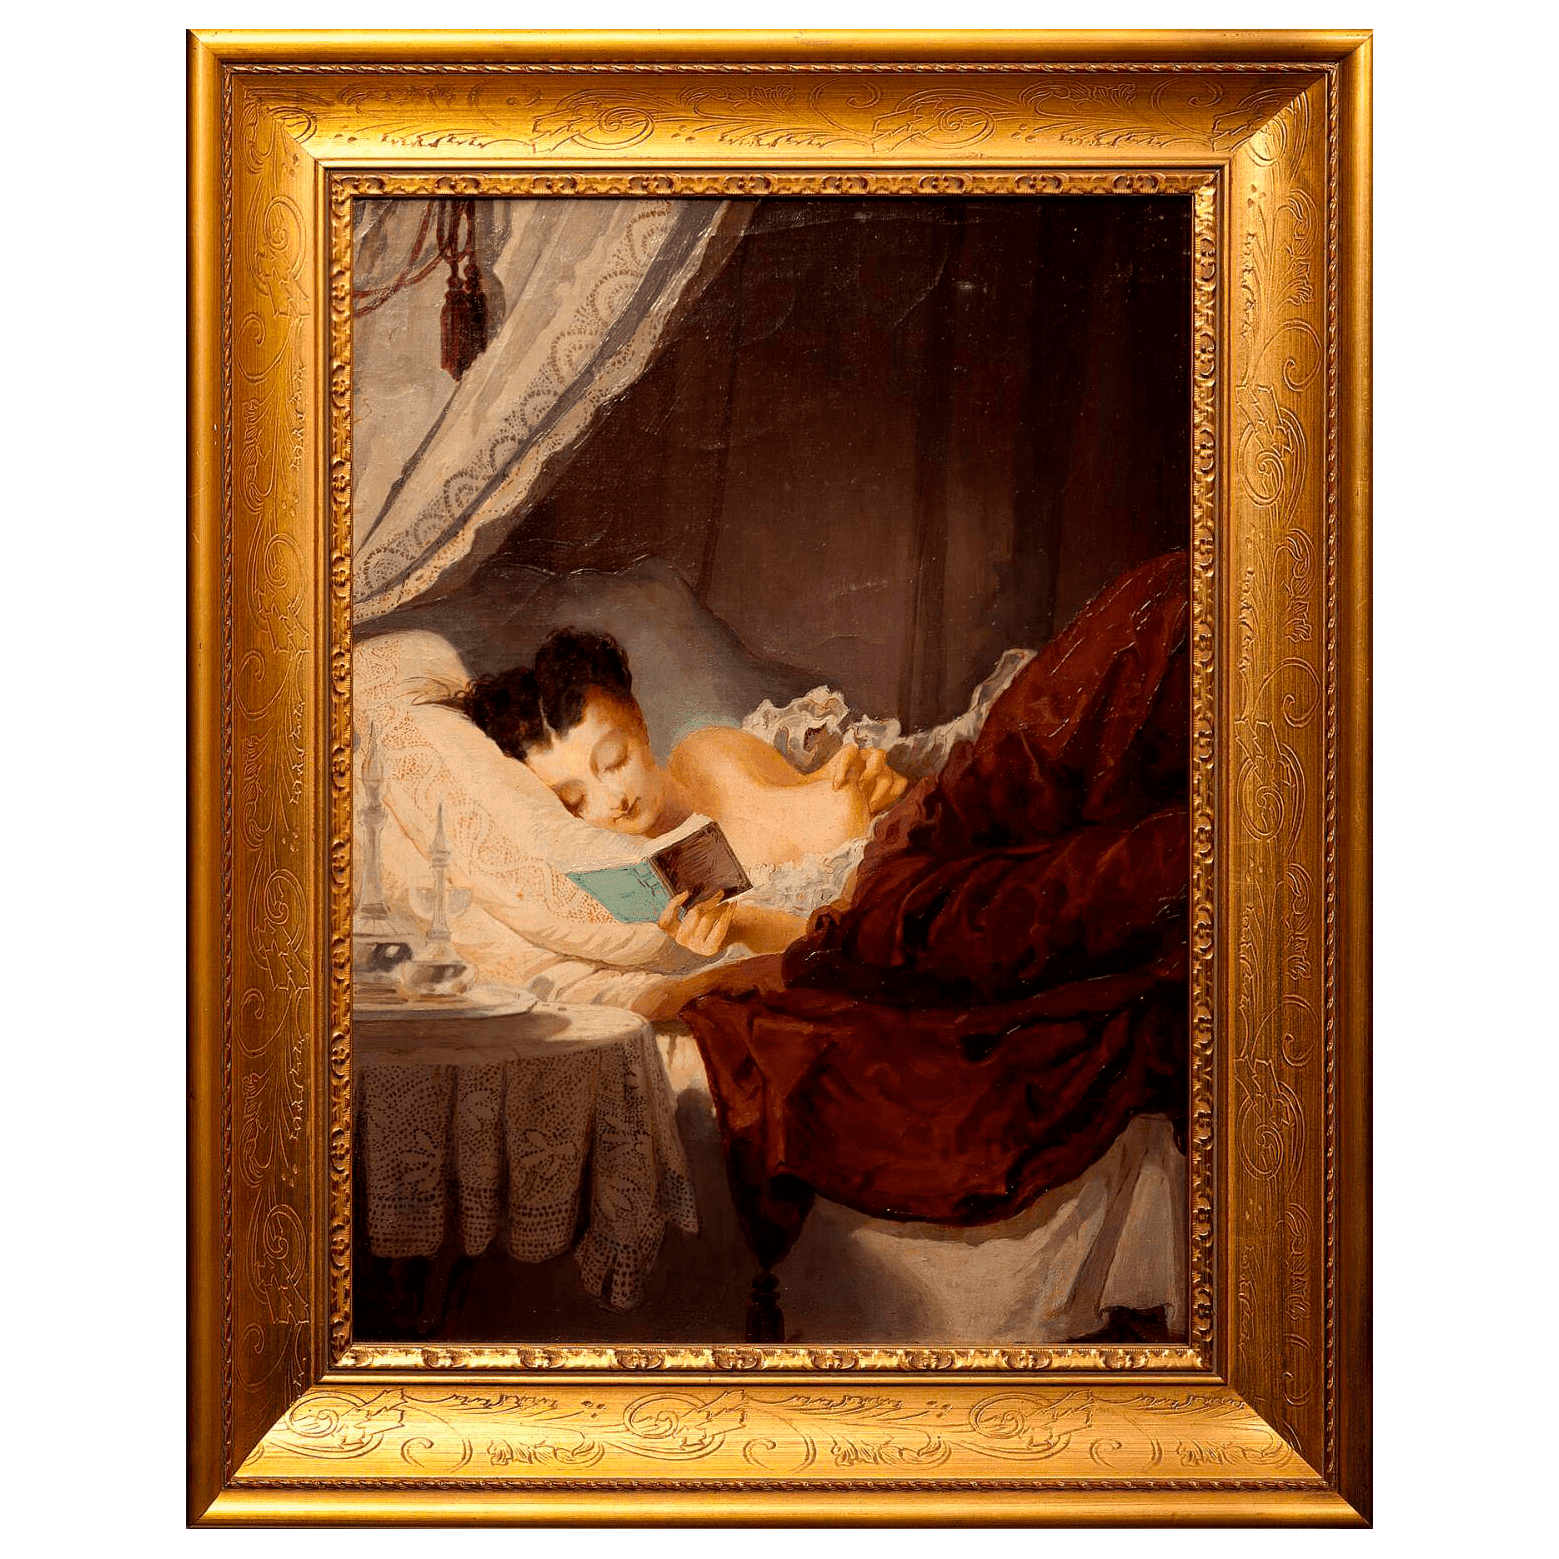 Картина «Чтение» неизв. художник Зап. Европы конца 19 века, холст, масло